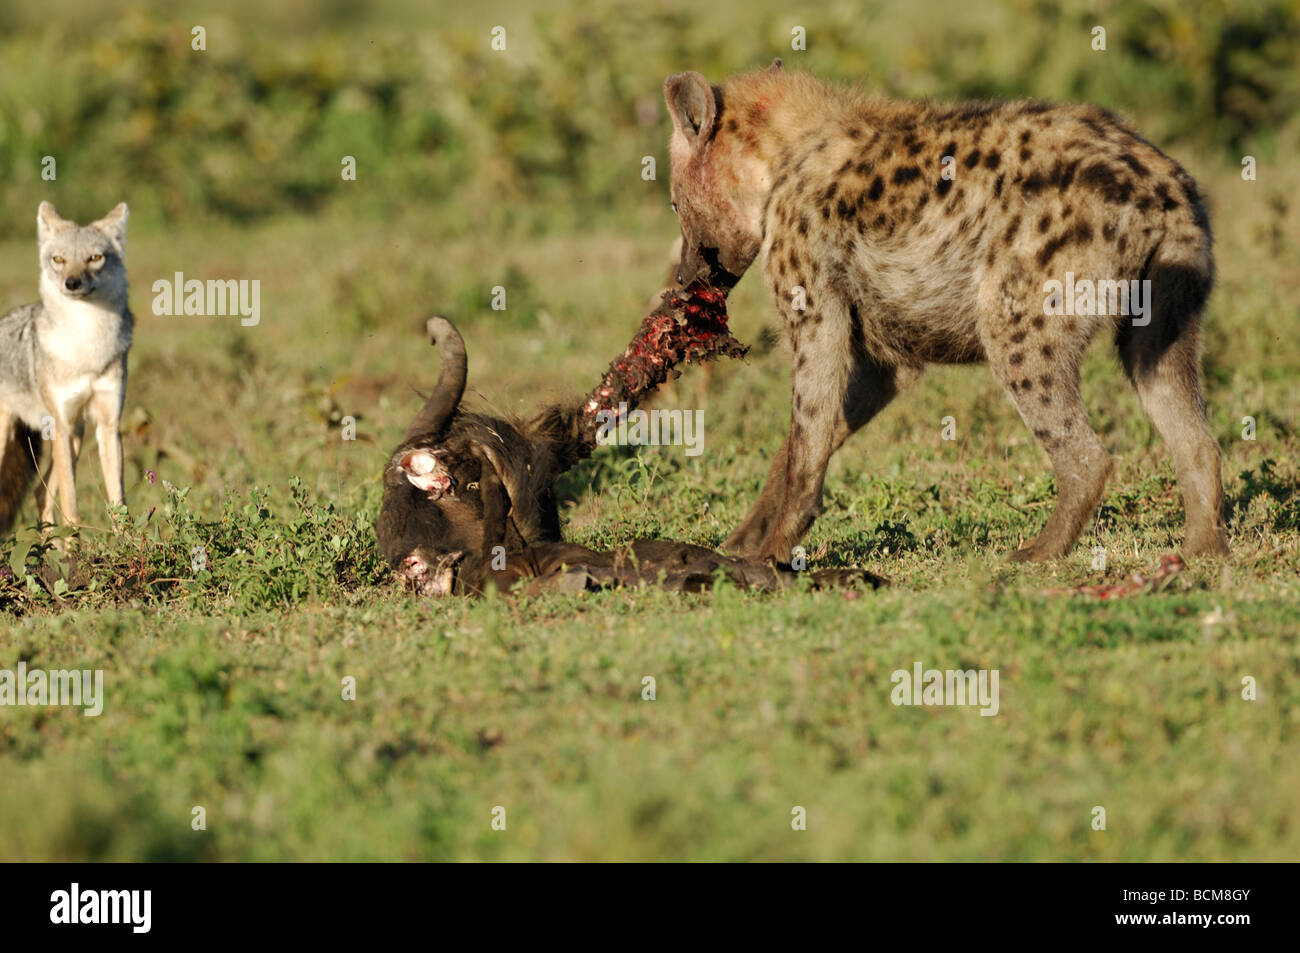 Stock Foto von einem gefleckte Hyäne an einen Kadaver, Ndutu, Tansania, Februar 2009. Stockfoto